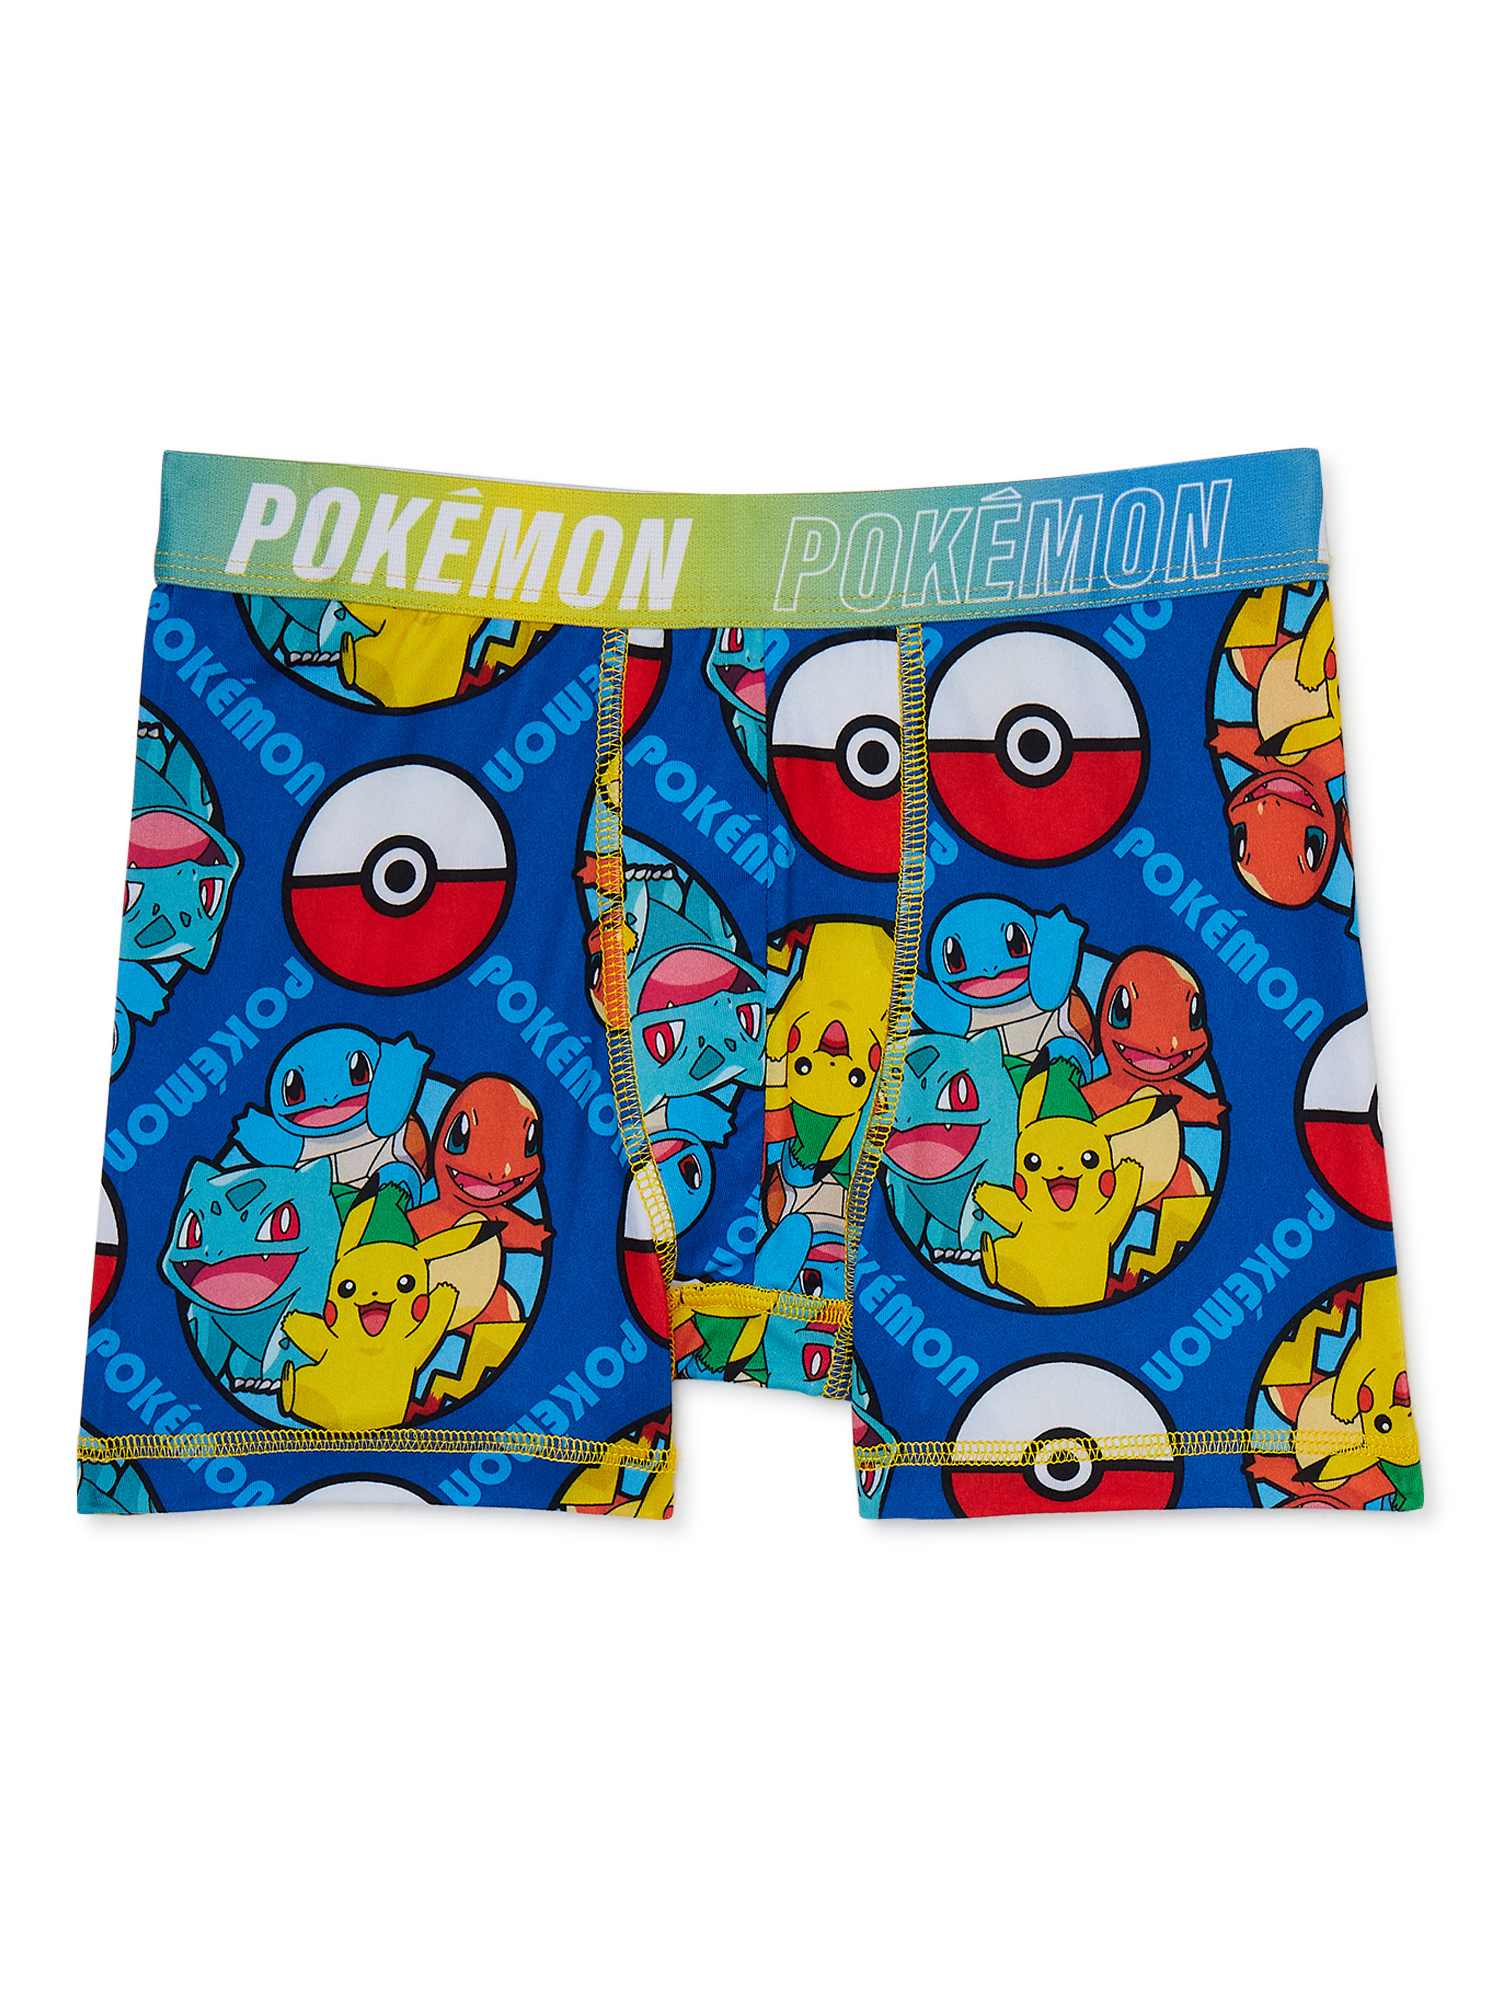 Pokémon Boy's Boxer Briefs Underwear, 4-pack, Sizes 4-14 - image 5 of 7